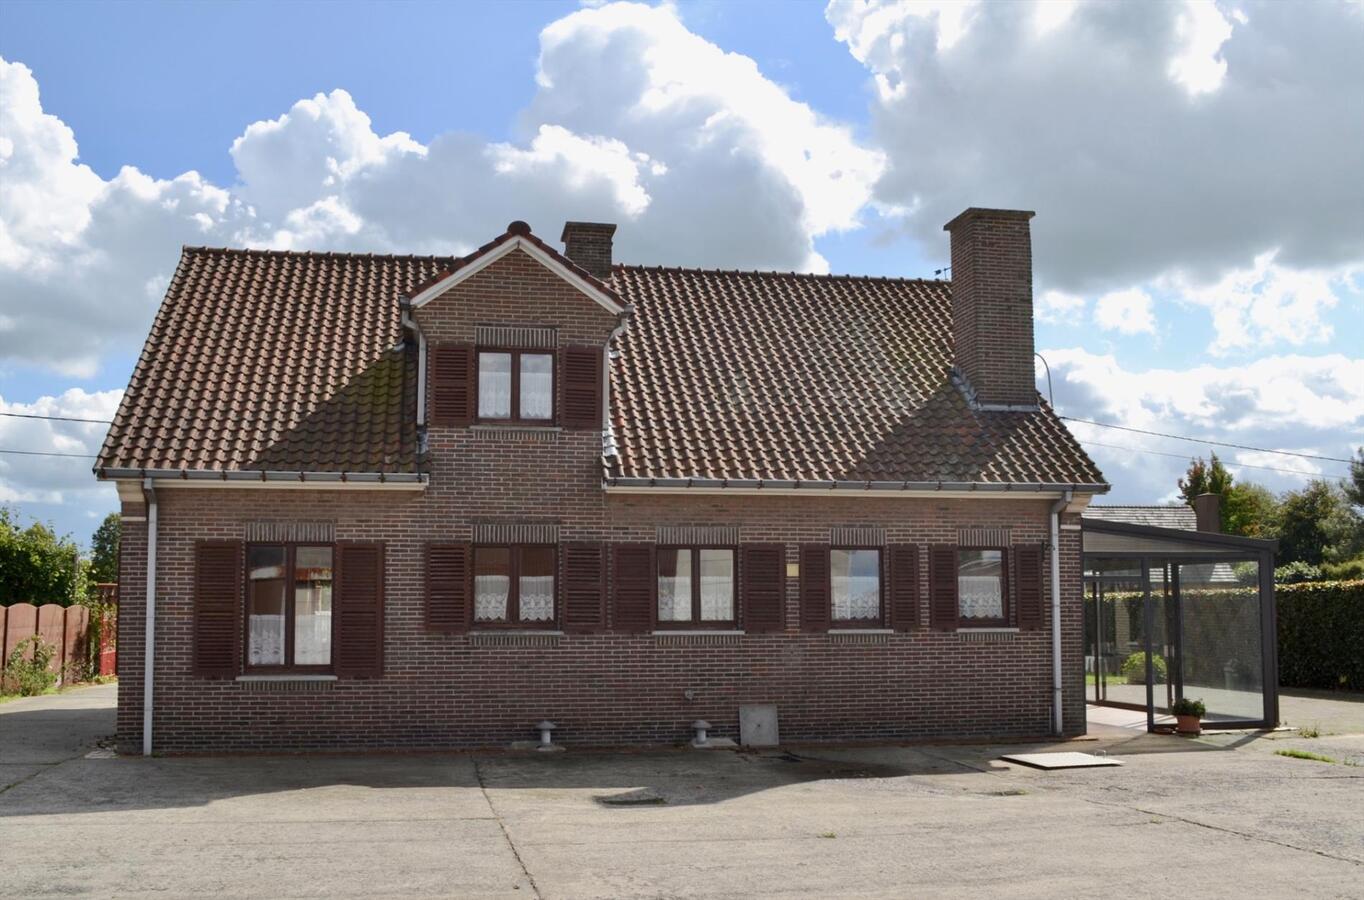 Property sold in Oudenaarde